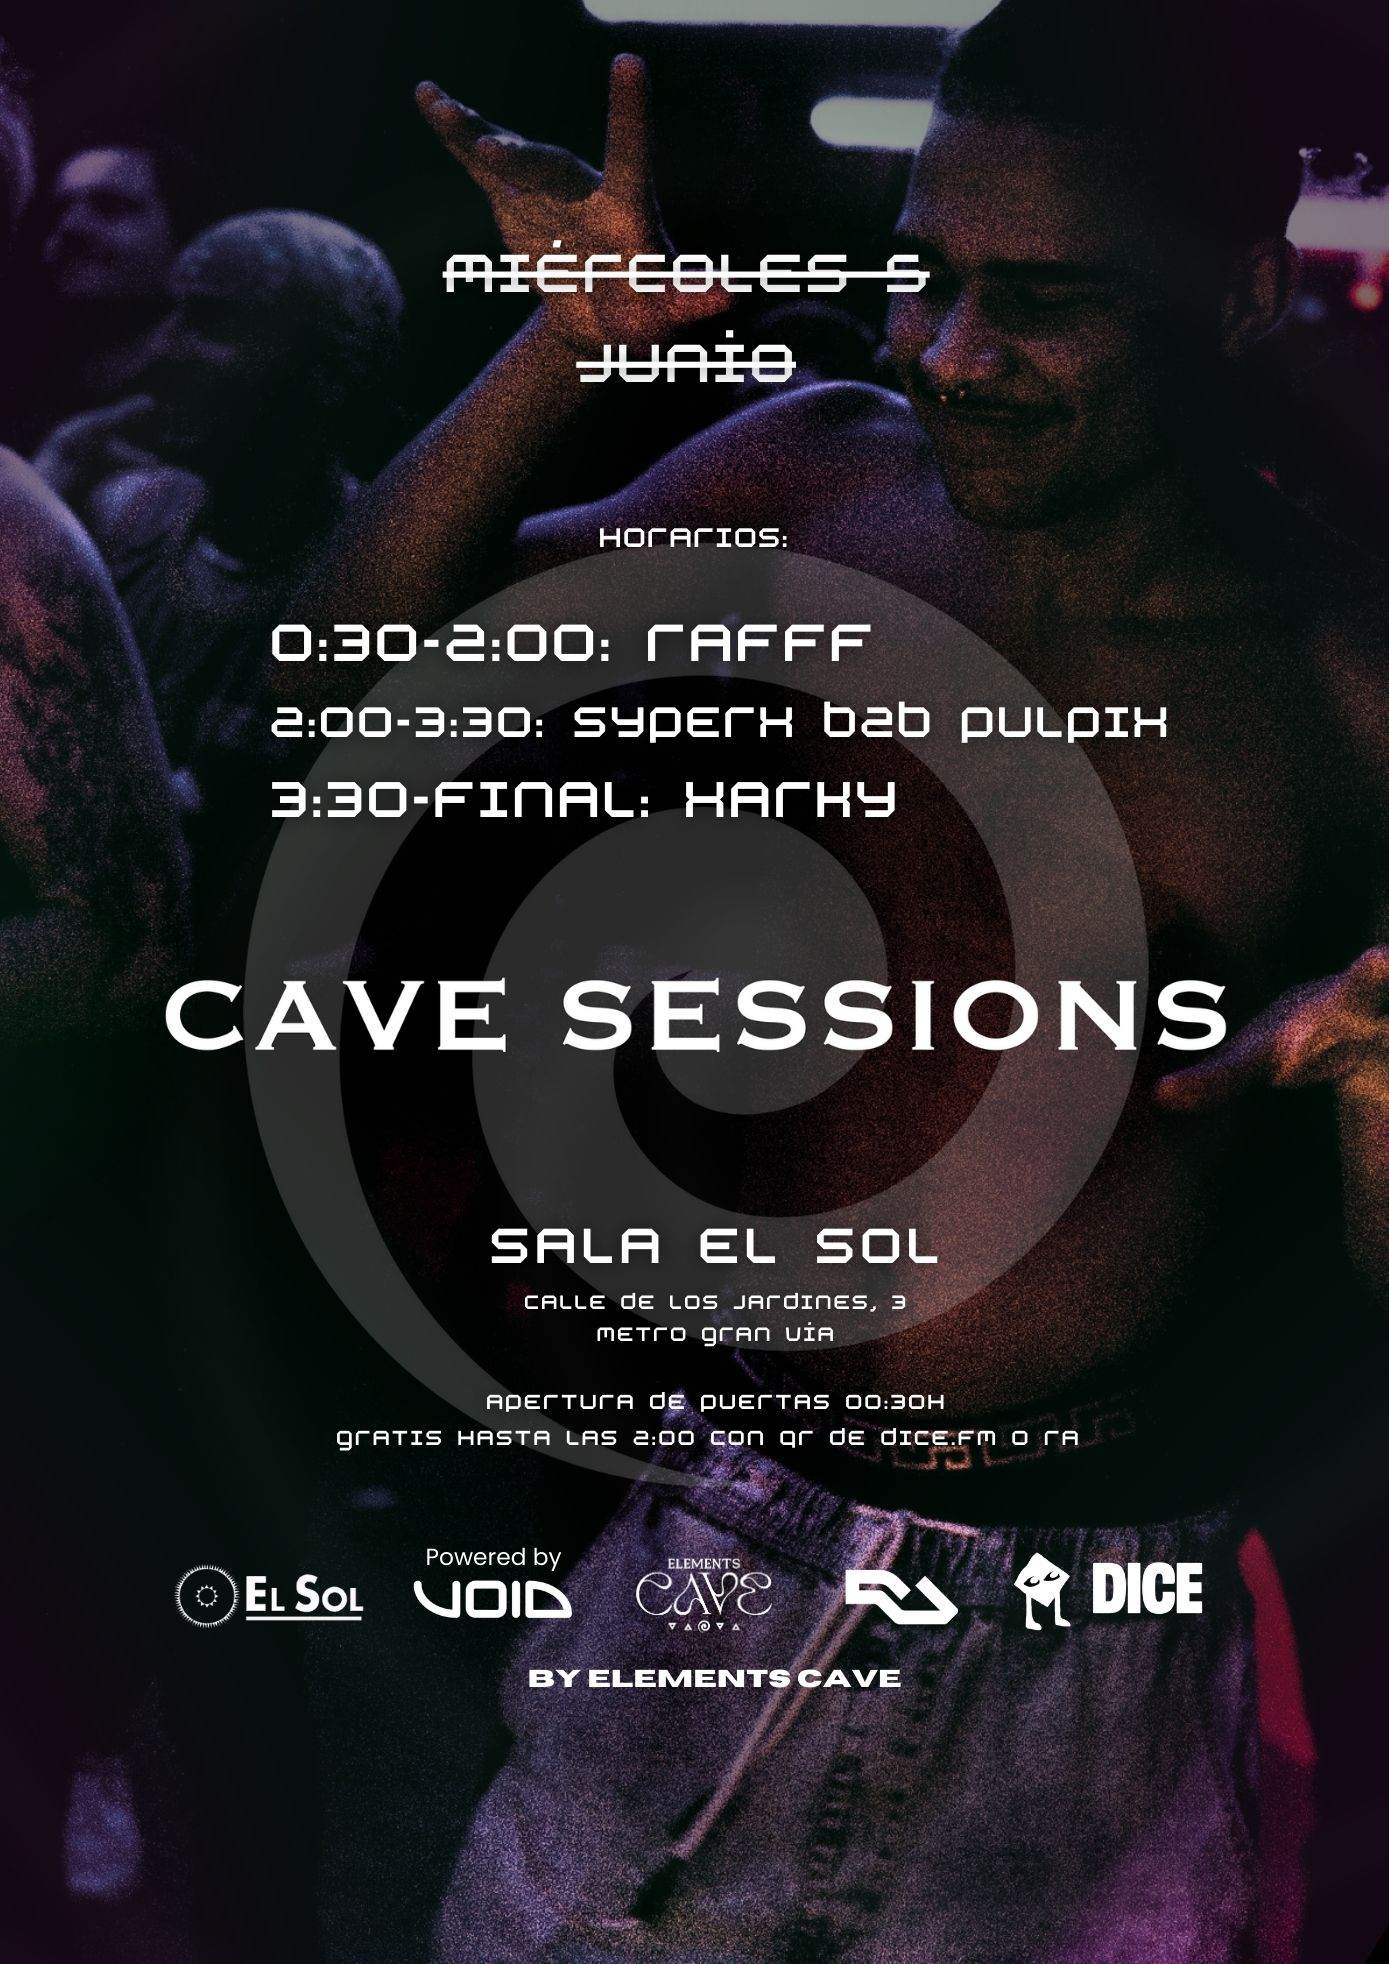 Cave Sessions by EC: Entrada gratis hasta las 2:00 con RA - フライヤー裏